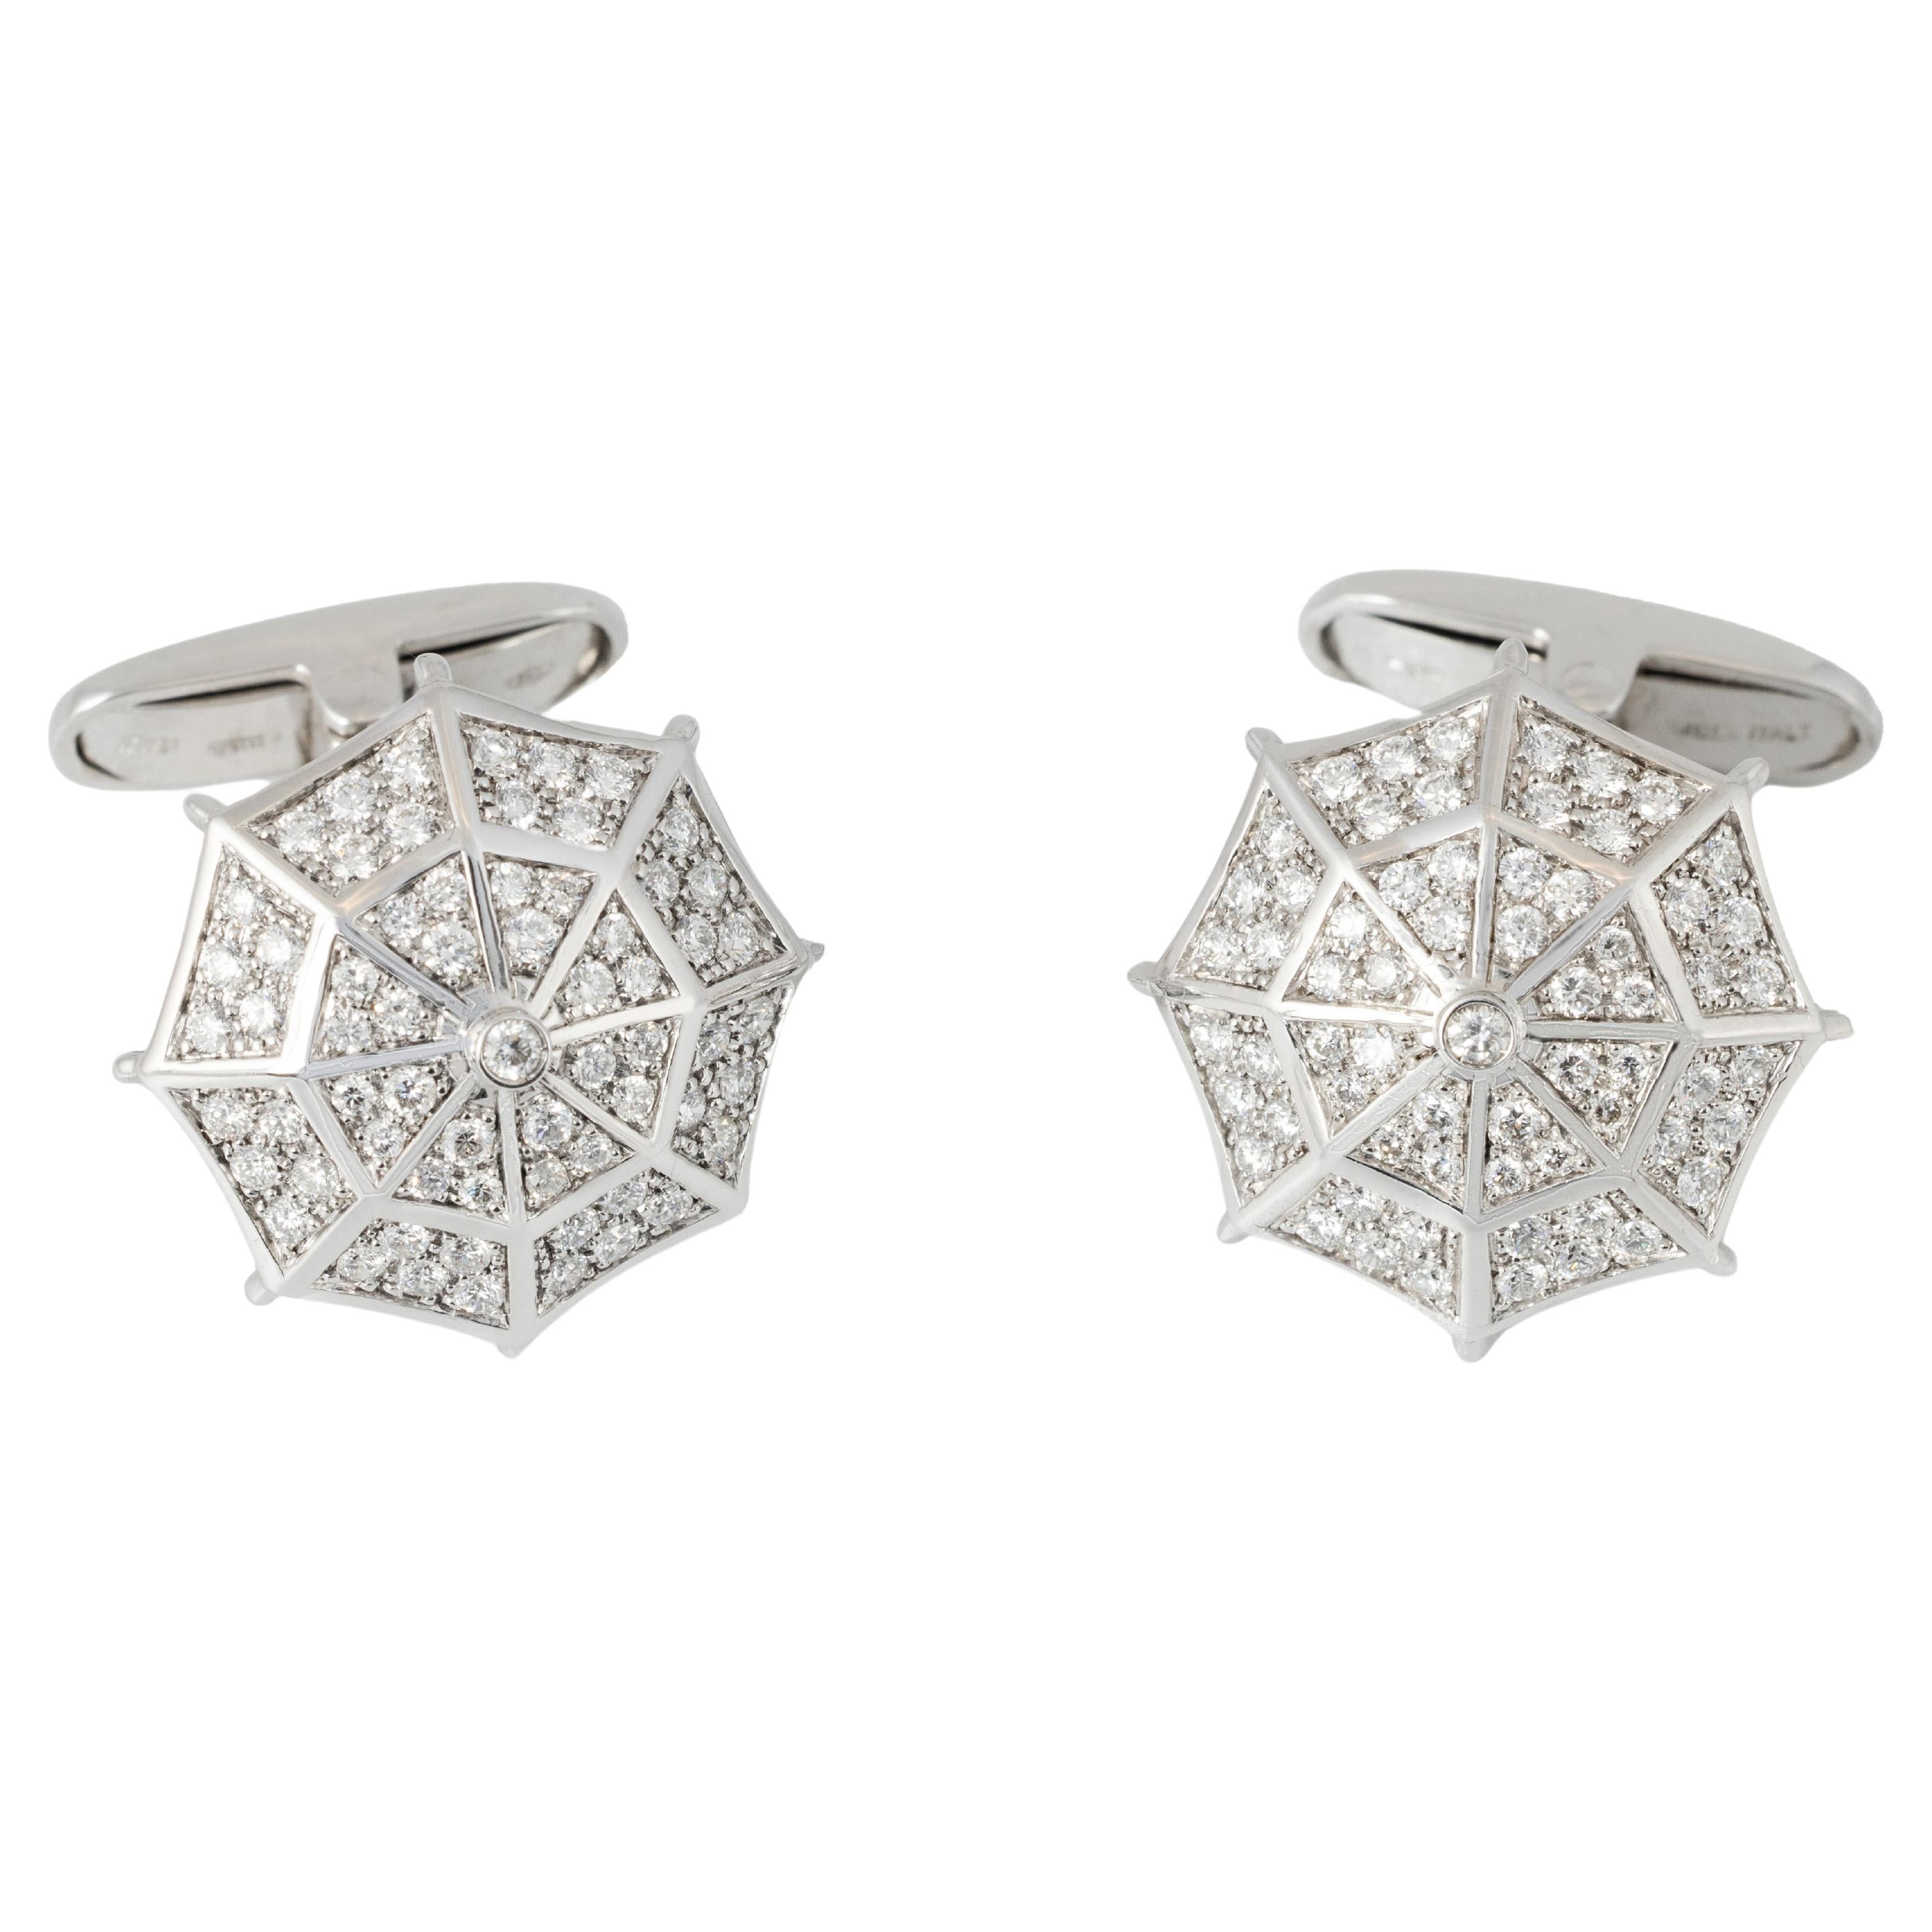 Boutons de manchette "Costis" Umbrella Collection WG - Pave' avec 1,19 carats de diamants 